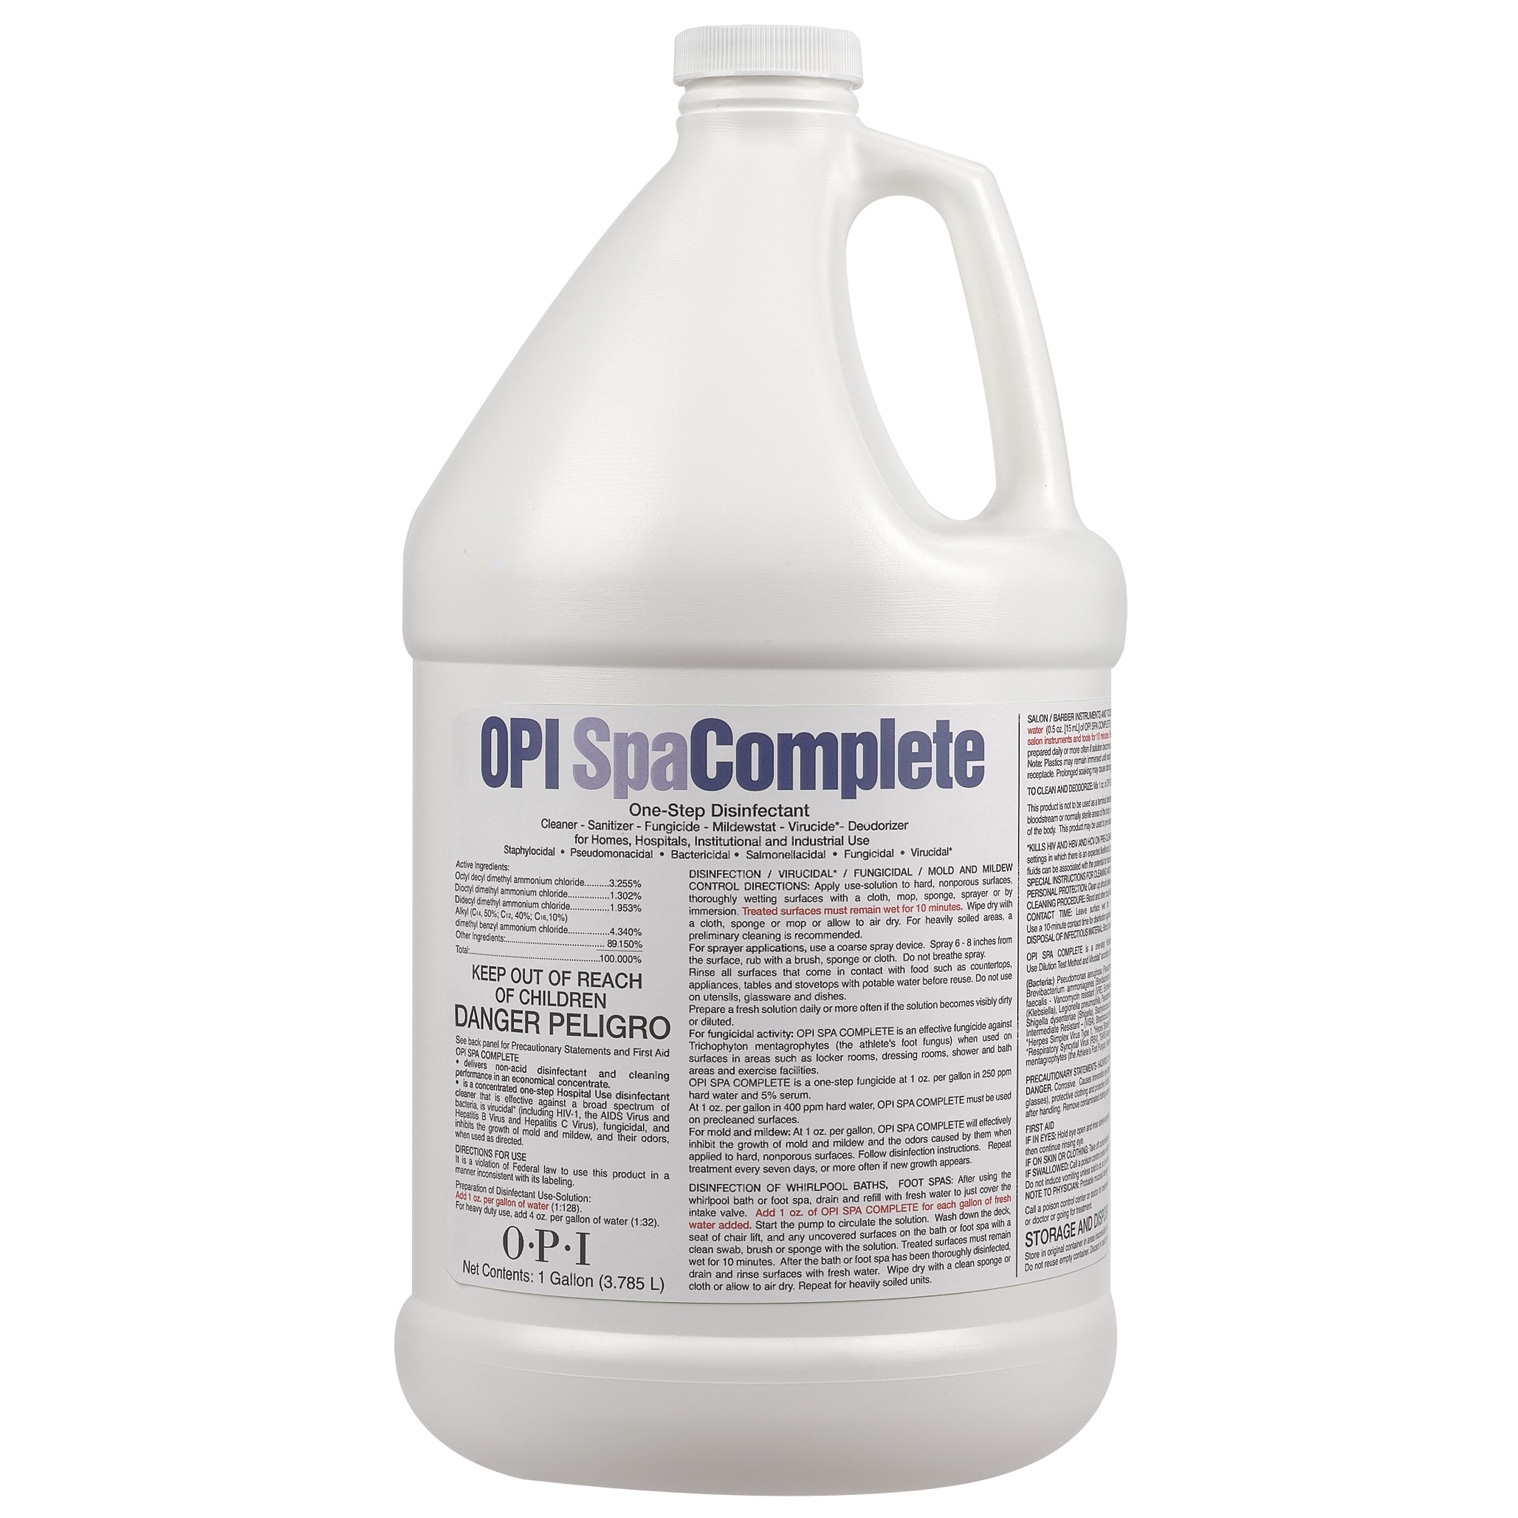 OPI Mani-Pedi: Spa Complete Disinfectant